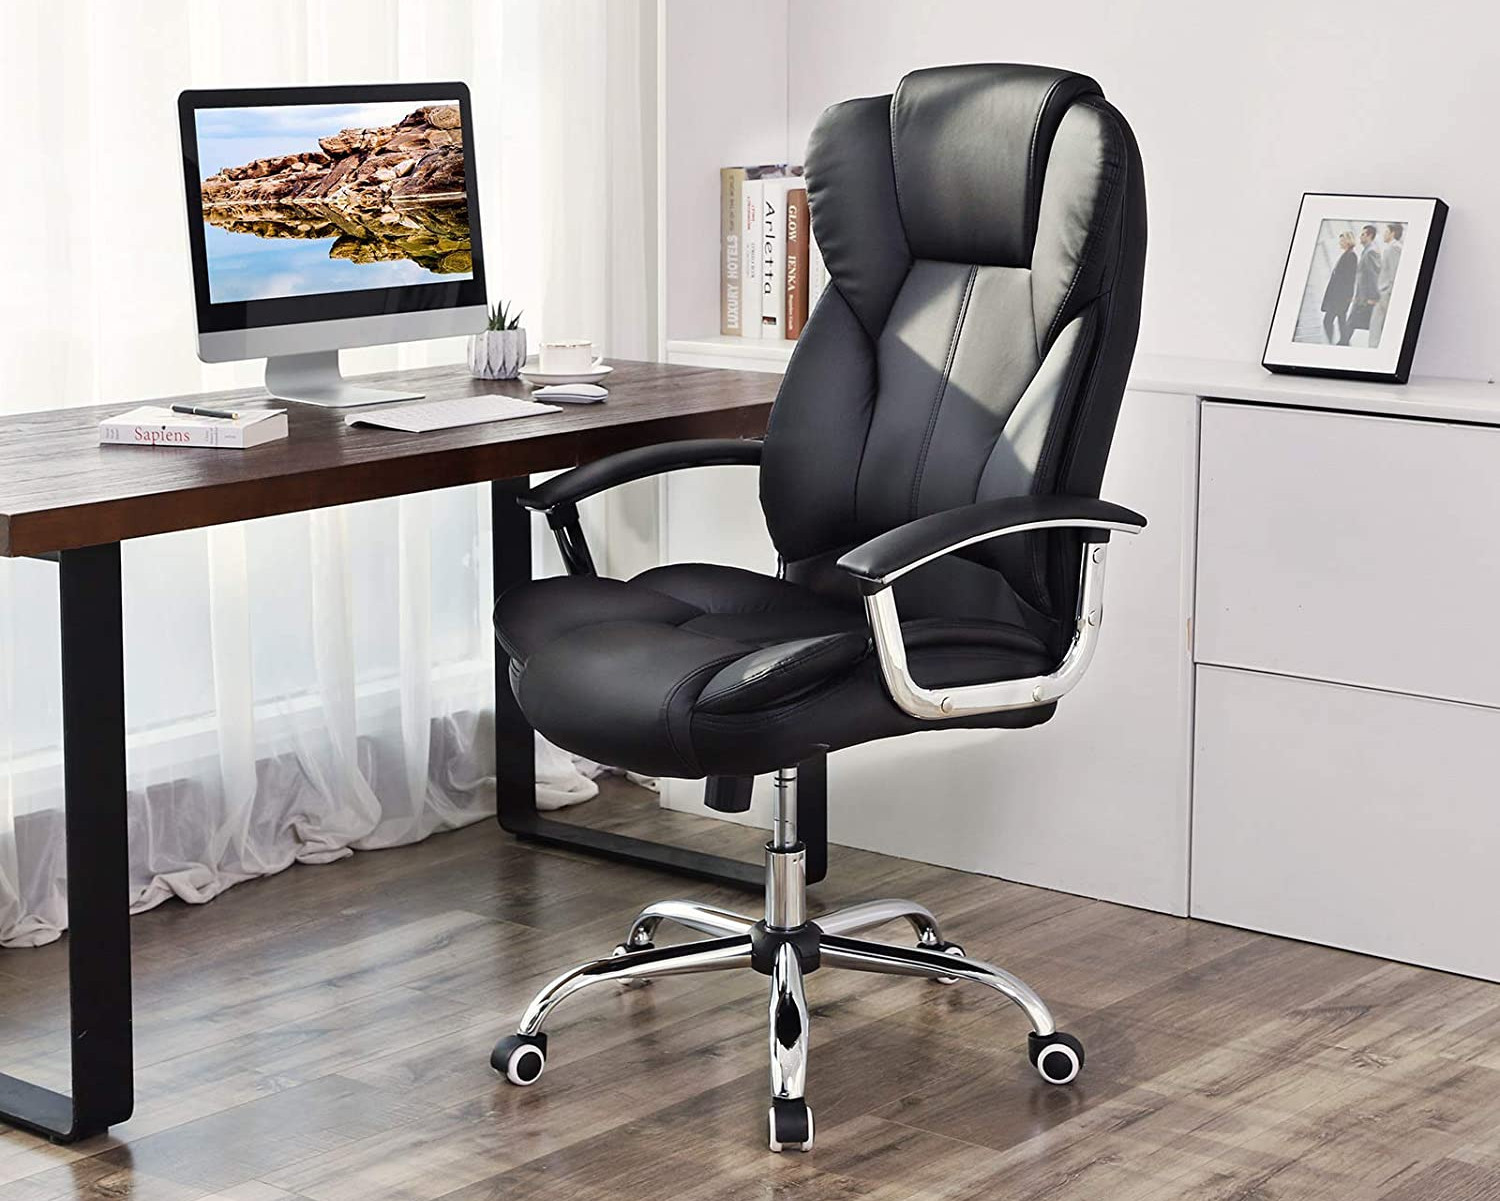 necesitas comprar una silla de oficina o de escritorio ergonómica, o una de gamer, Amazon tienes las mejores alternativas Oficina